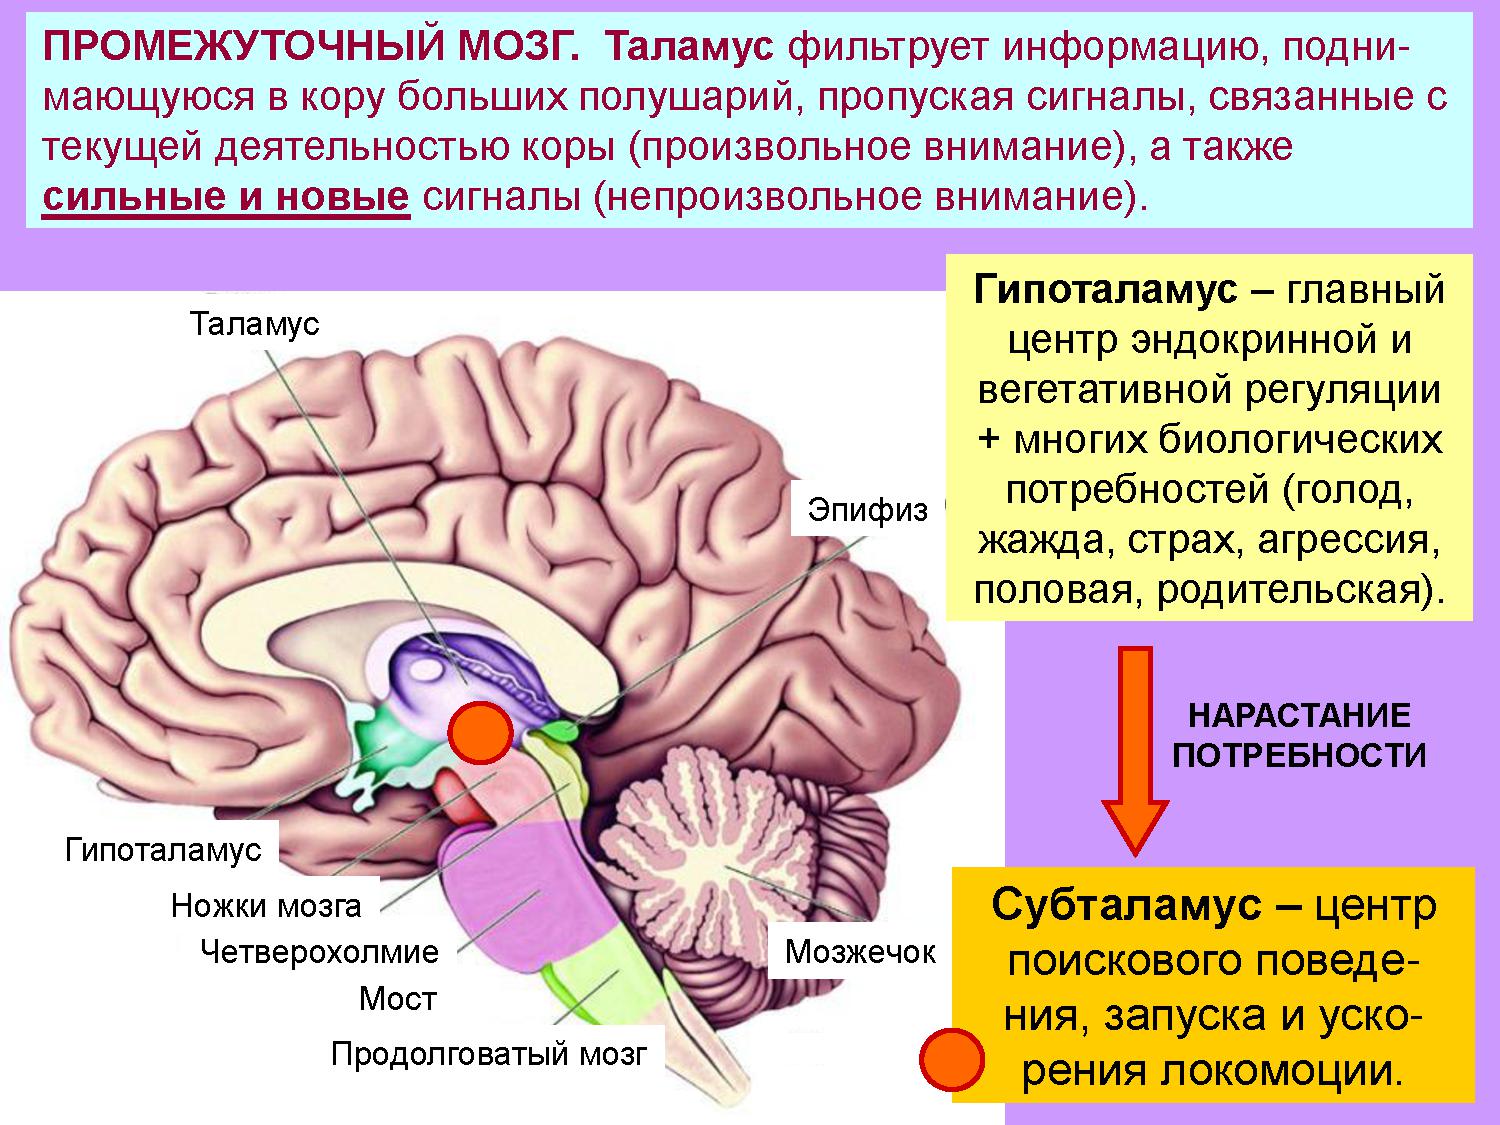 Промежуточный мозг располагается в. Эпиталамус и субталамус. Промежуточный мозг строение. Промежуточный мозг схема. Функции промежуточного мозга.